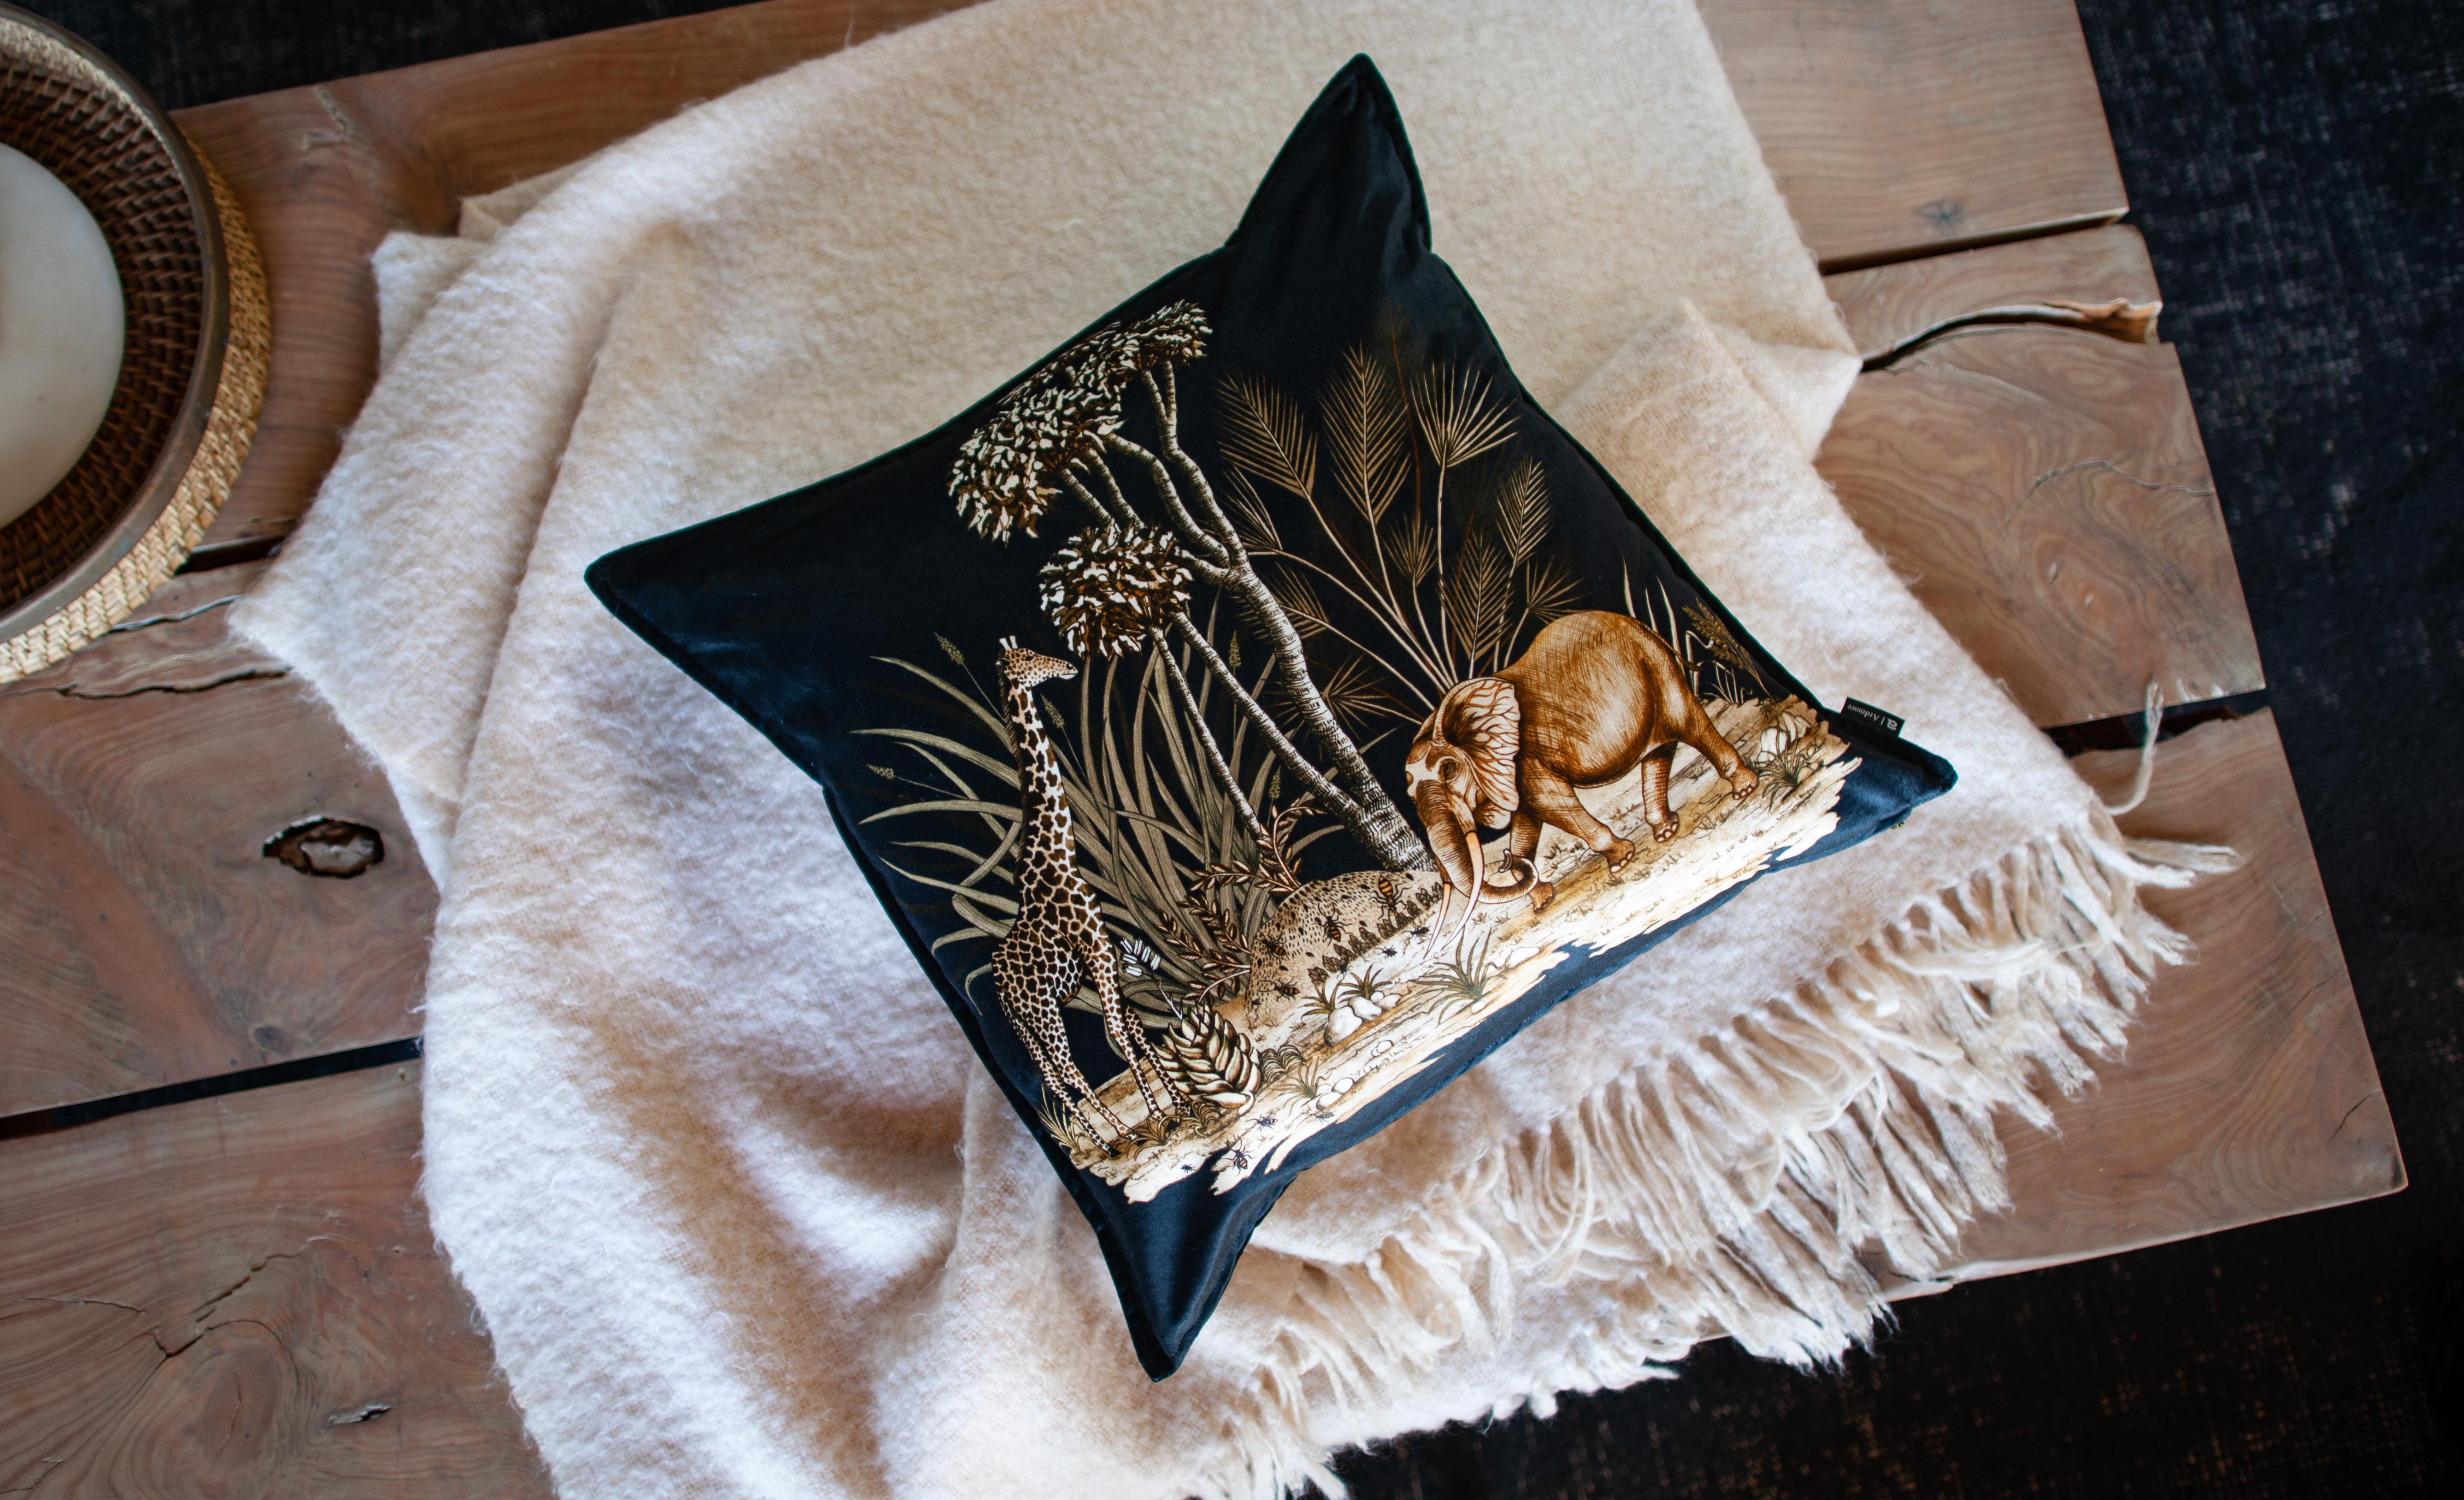 Thanda Toile Pillow - Cotton - Gold